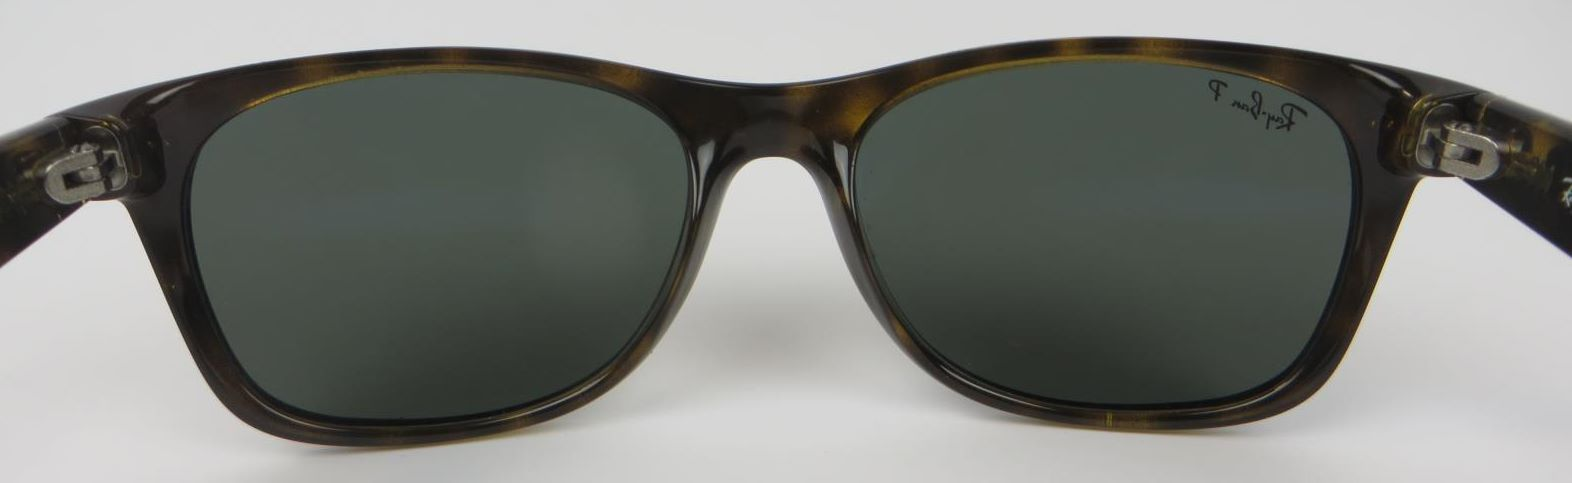 Ray-Ban New Wayfarer RB2132 902/58 55-18 Tortoise Frame Sunglasses